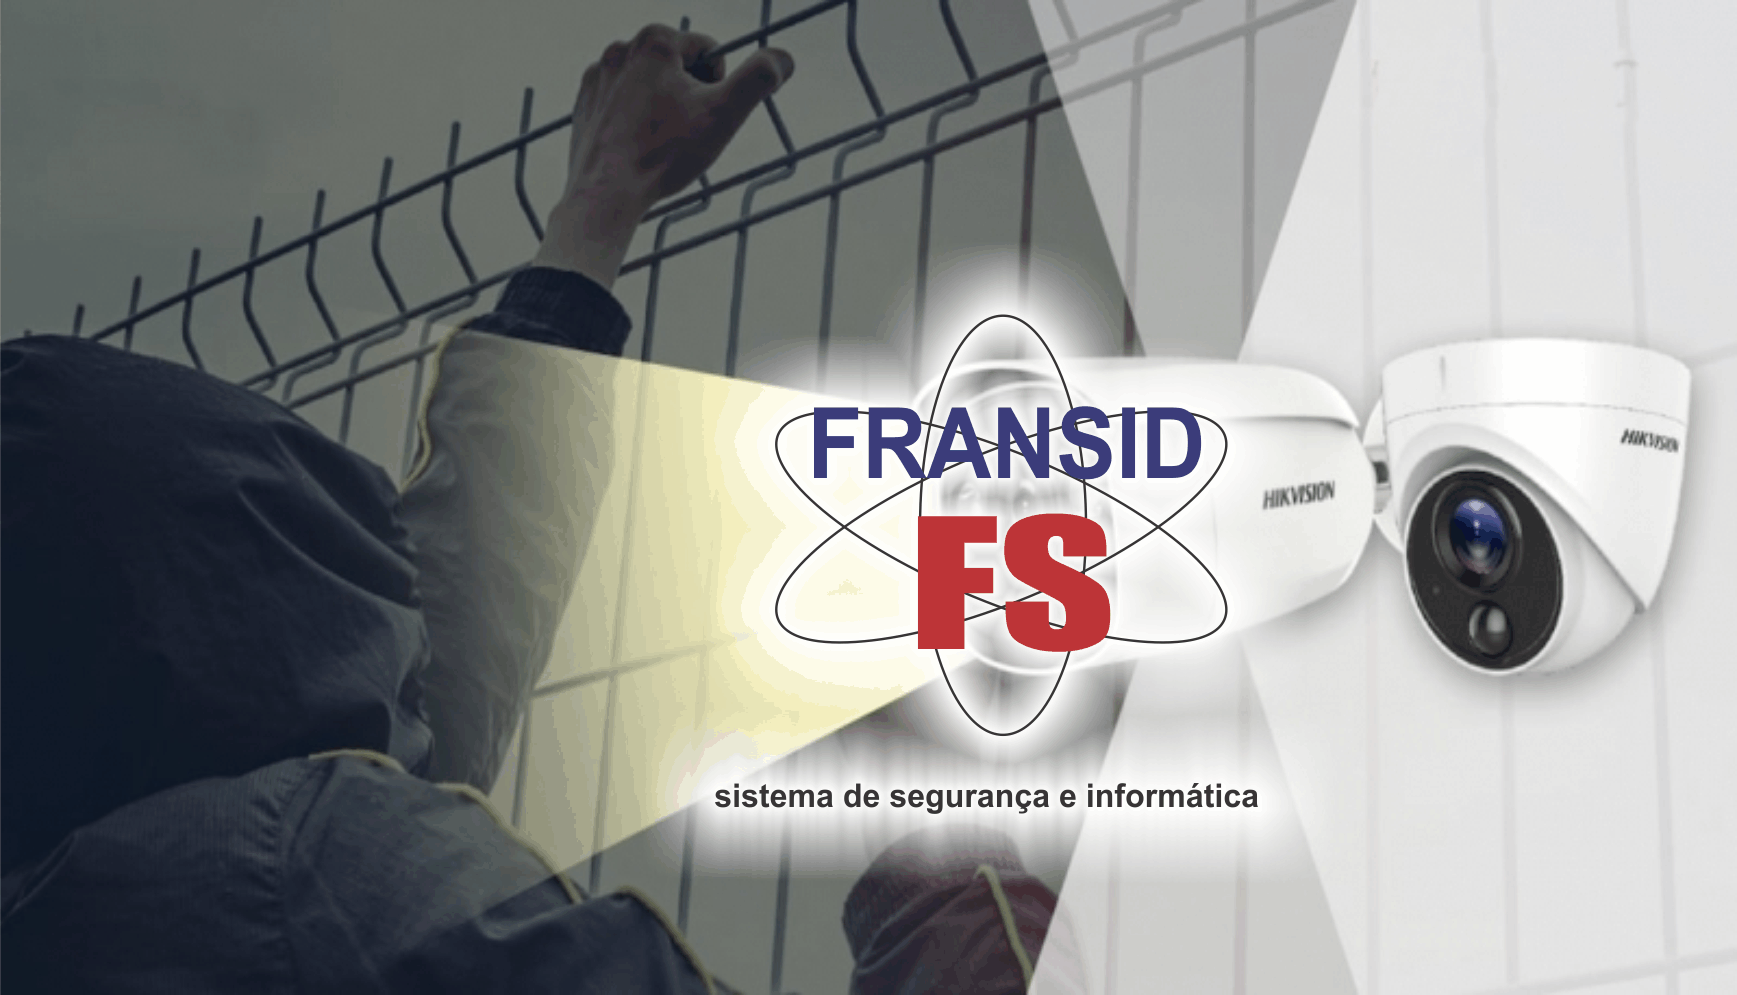  Fransid Sistema de Segurança e Informática      Fones: (41) 99993-5605